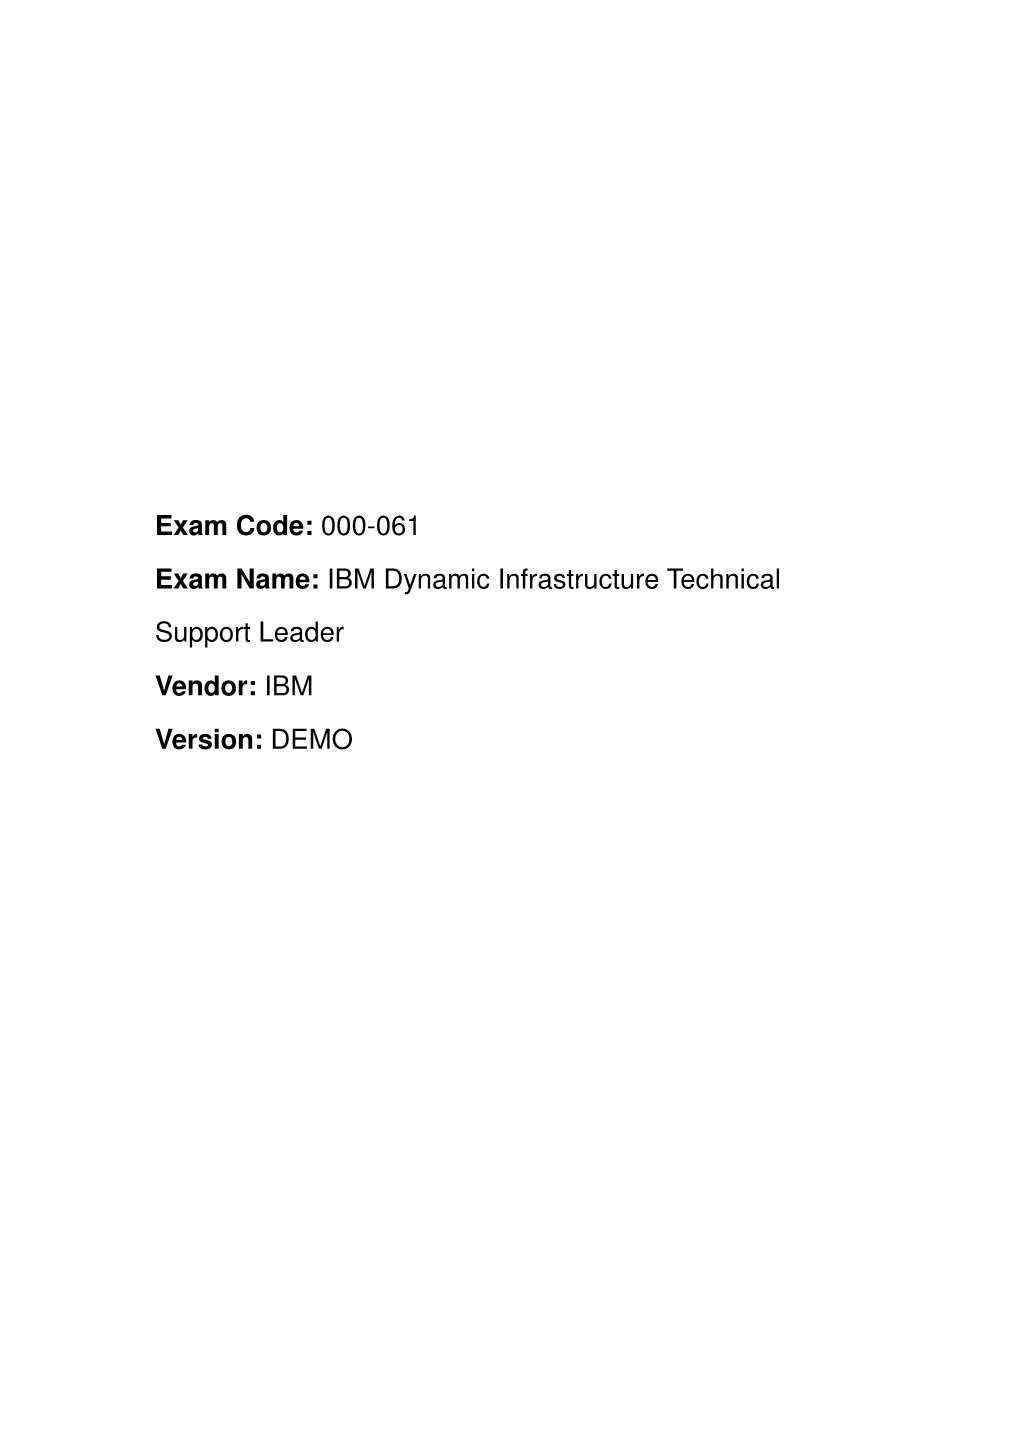 IBM Dynamic Infrastructure Technical Support Leader Vendor: IBM Version: DEMO